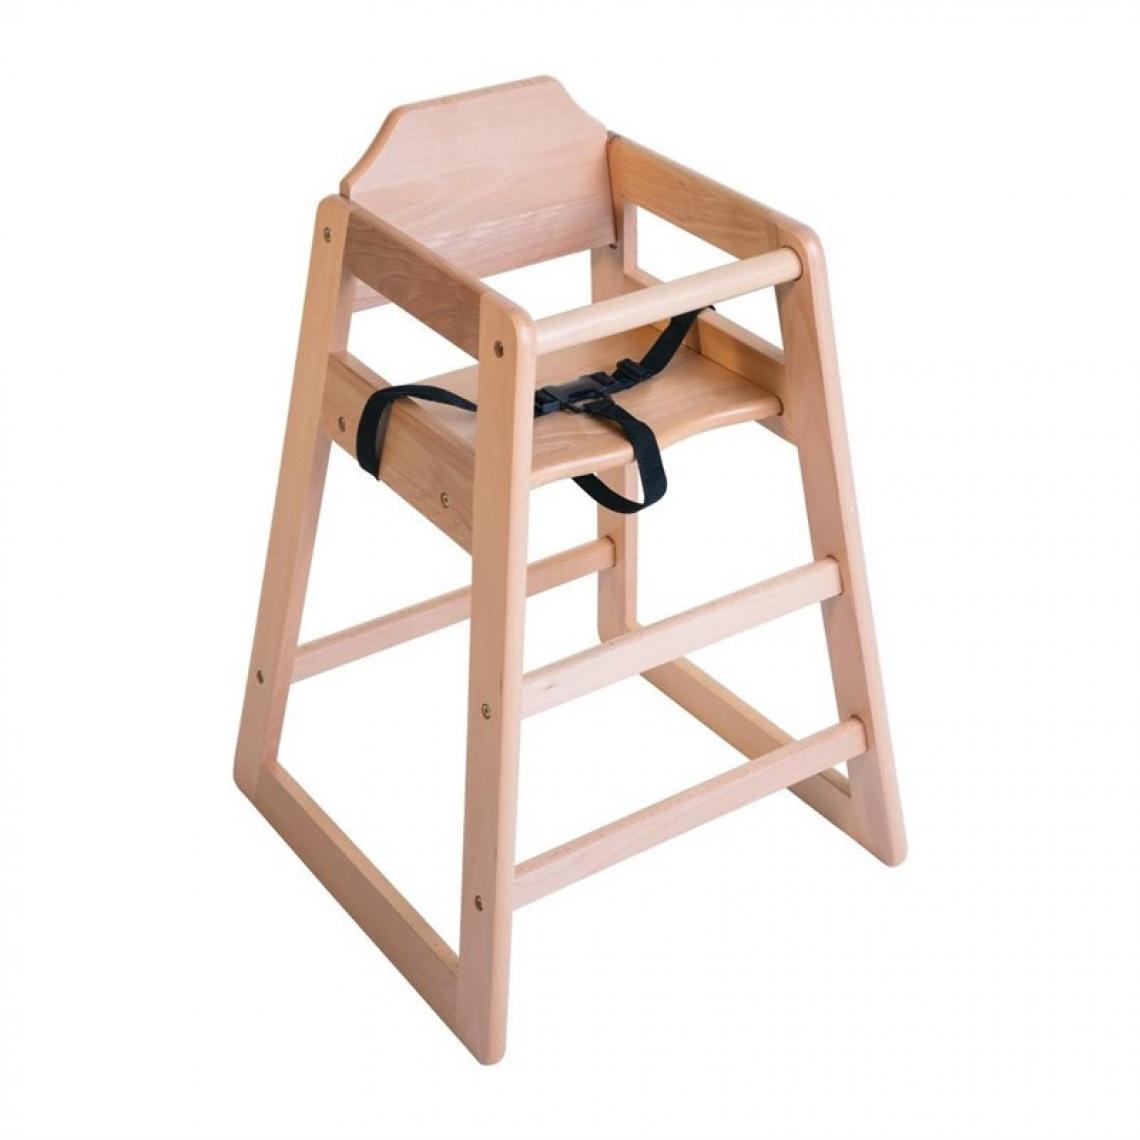 Materiel Chr Pro - Chaise haute en bois finition naturelle Bolero - Bois - Chaises